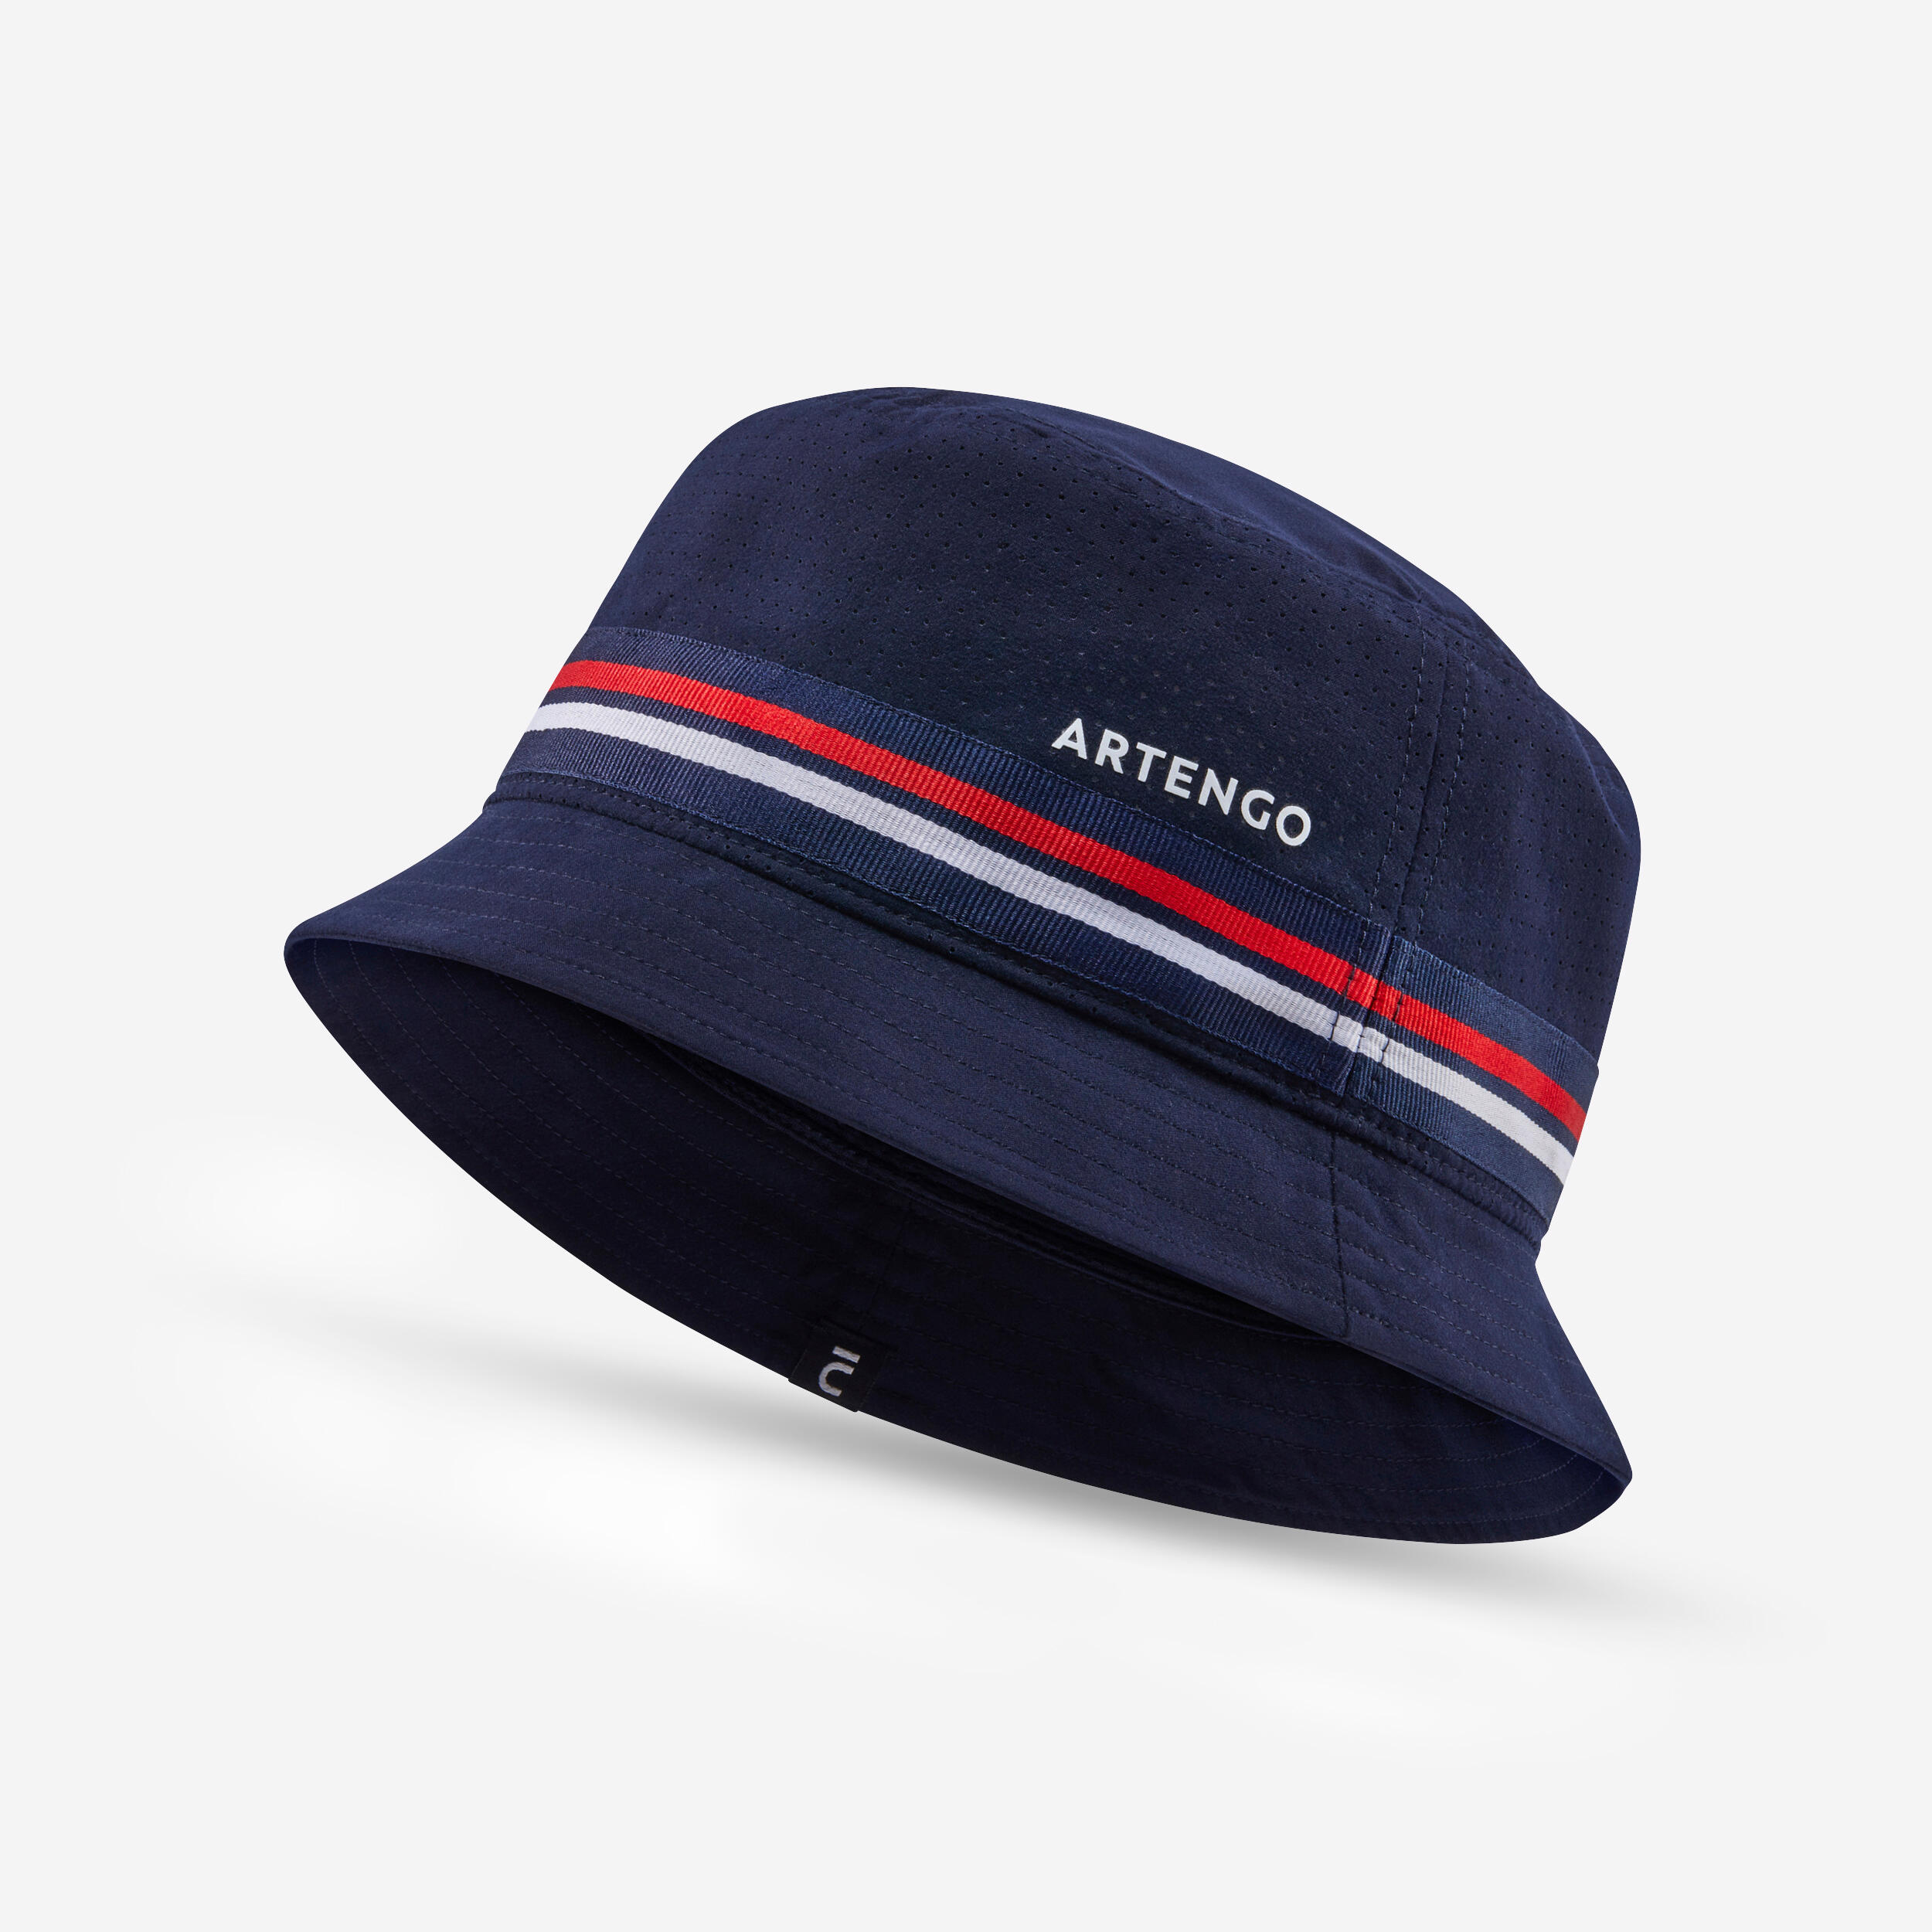 ARTENGO Tennis Bucket Hat - Navy